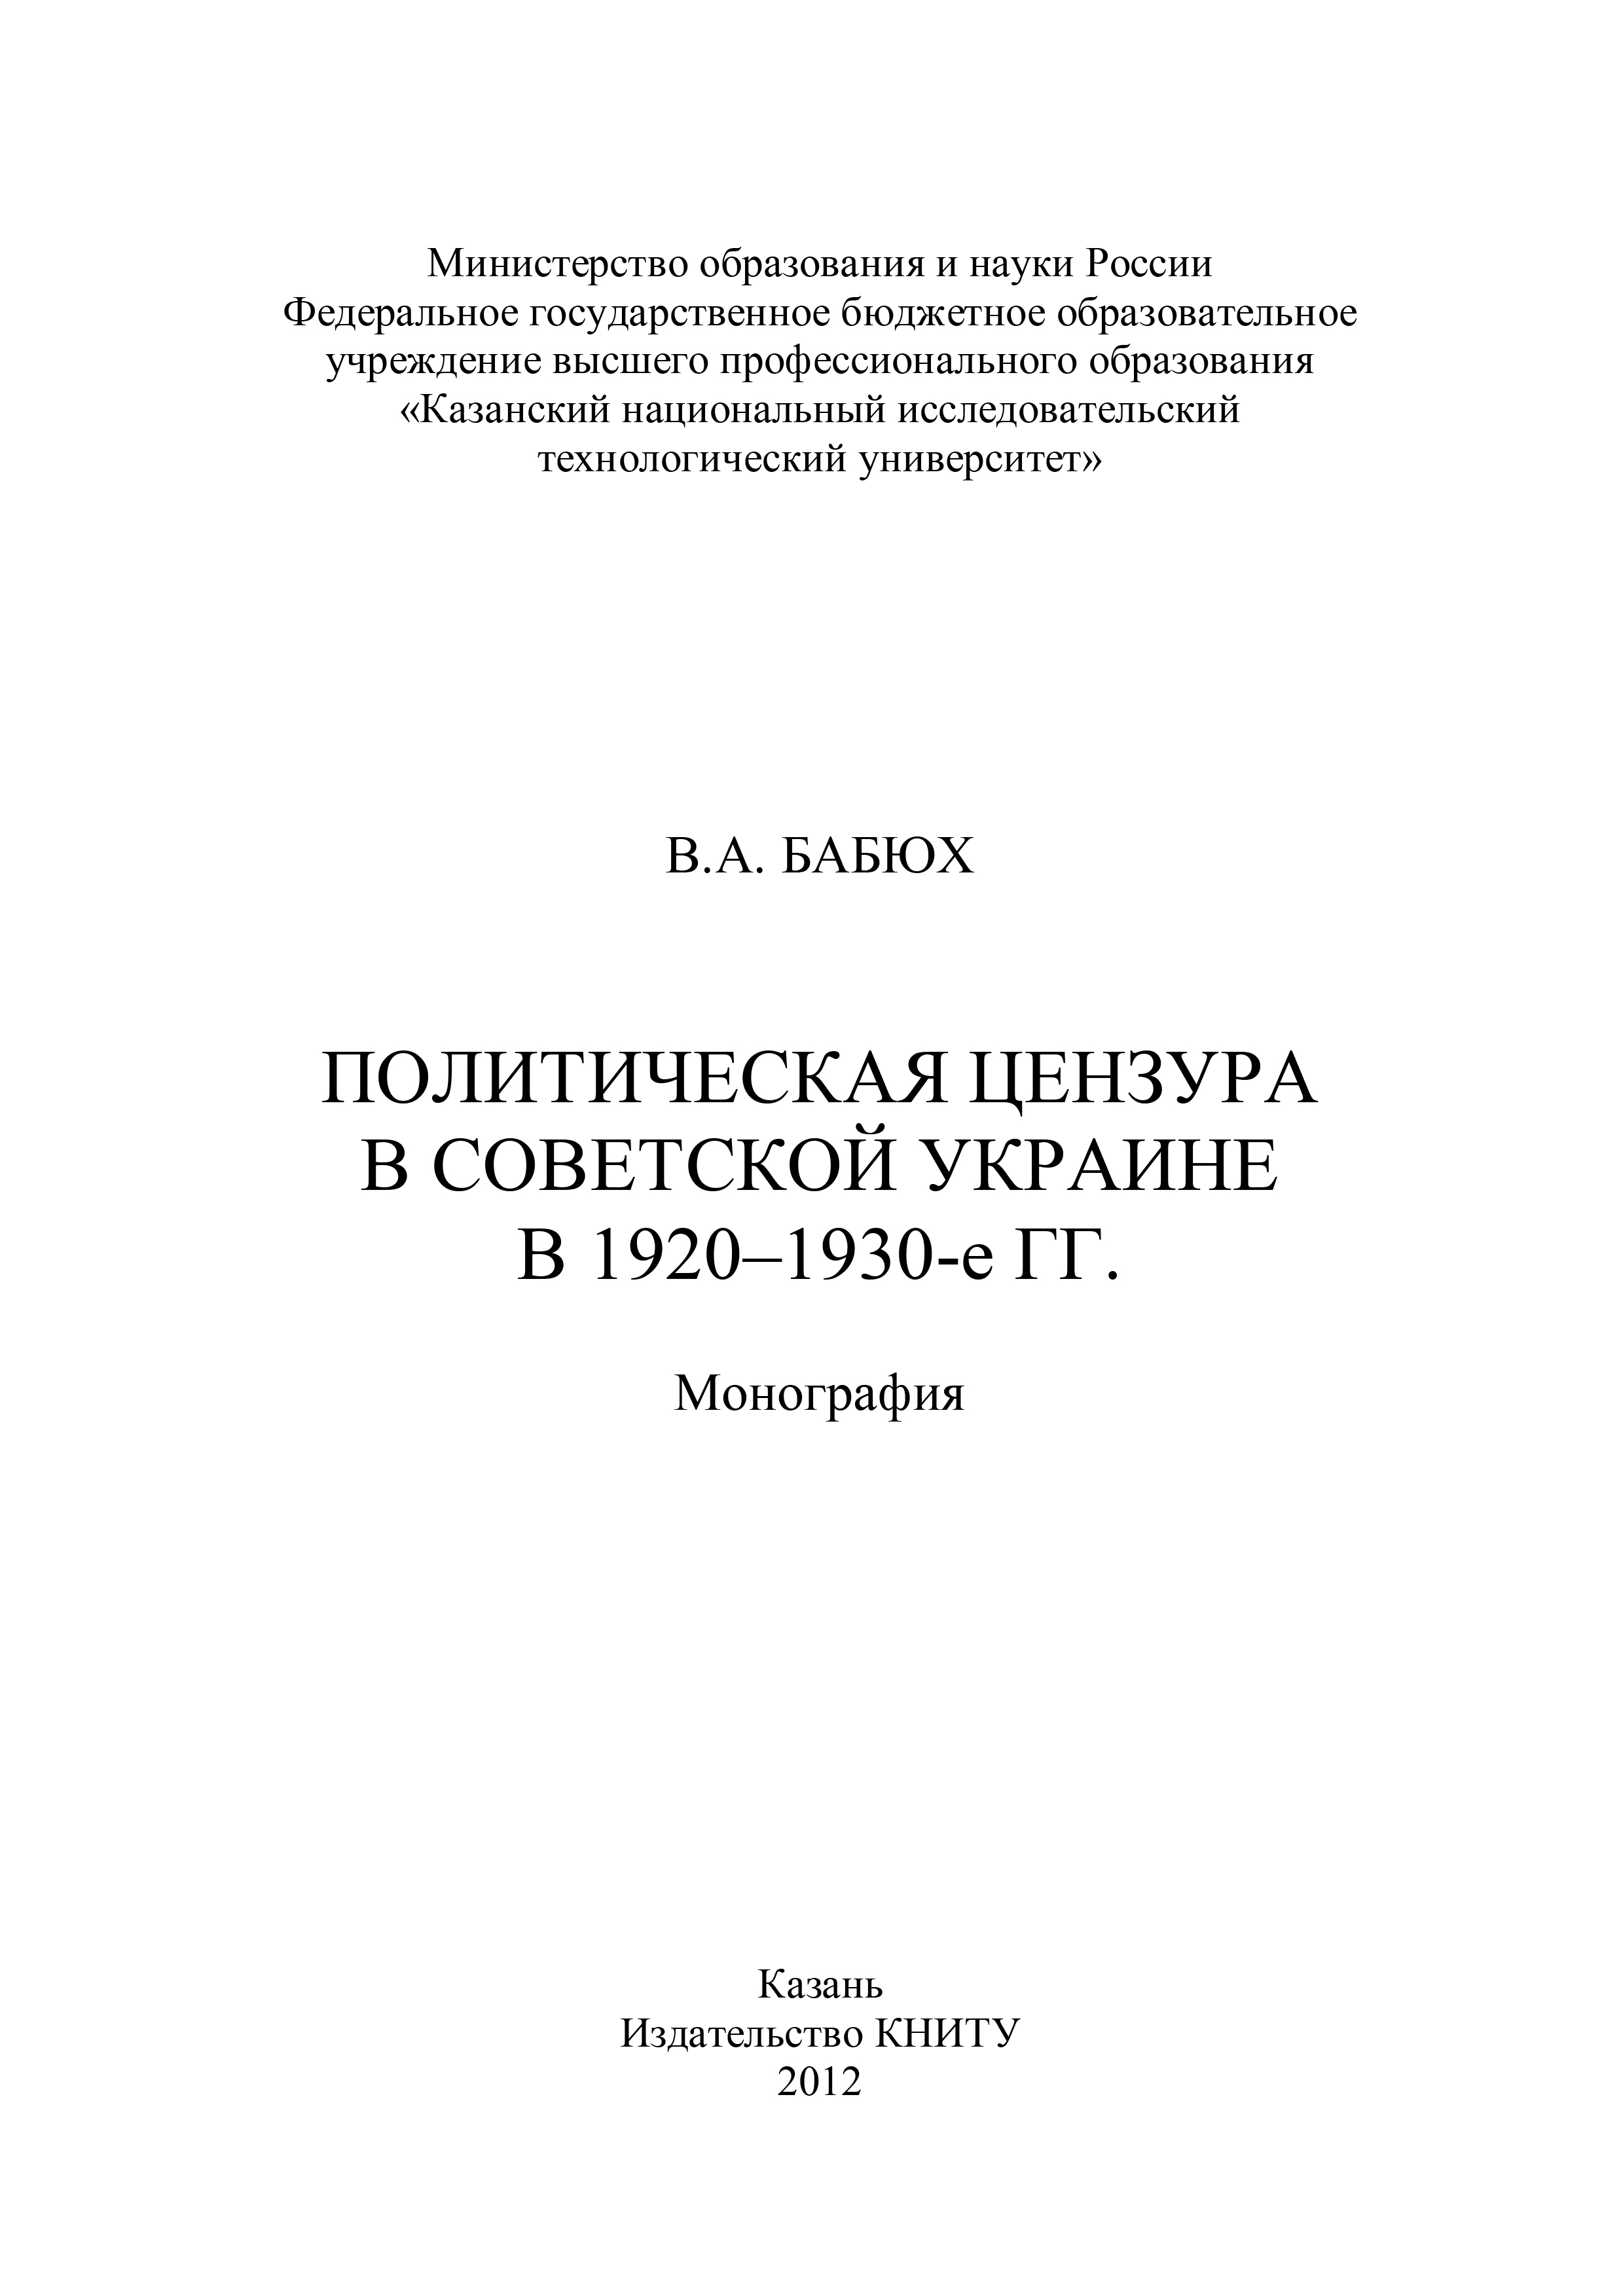 Политическая цензура в советской Украине в 1920-1930-е гг.